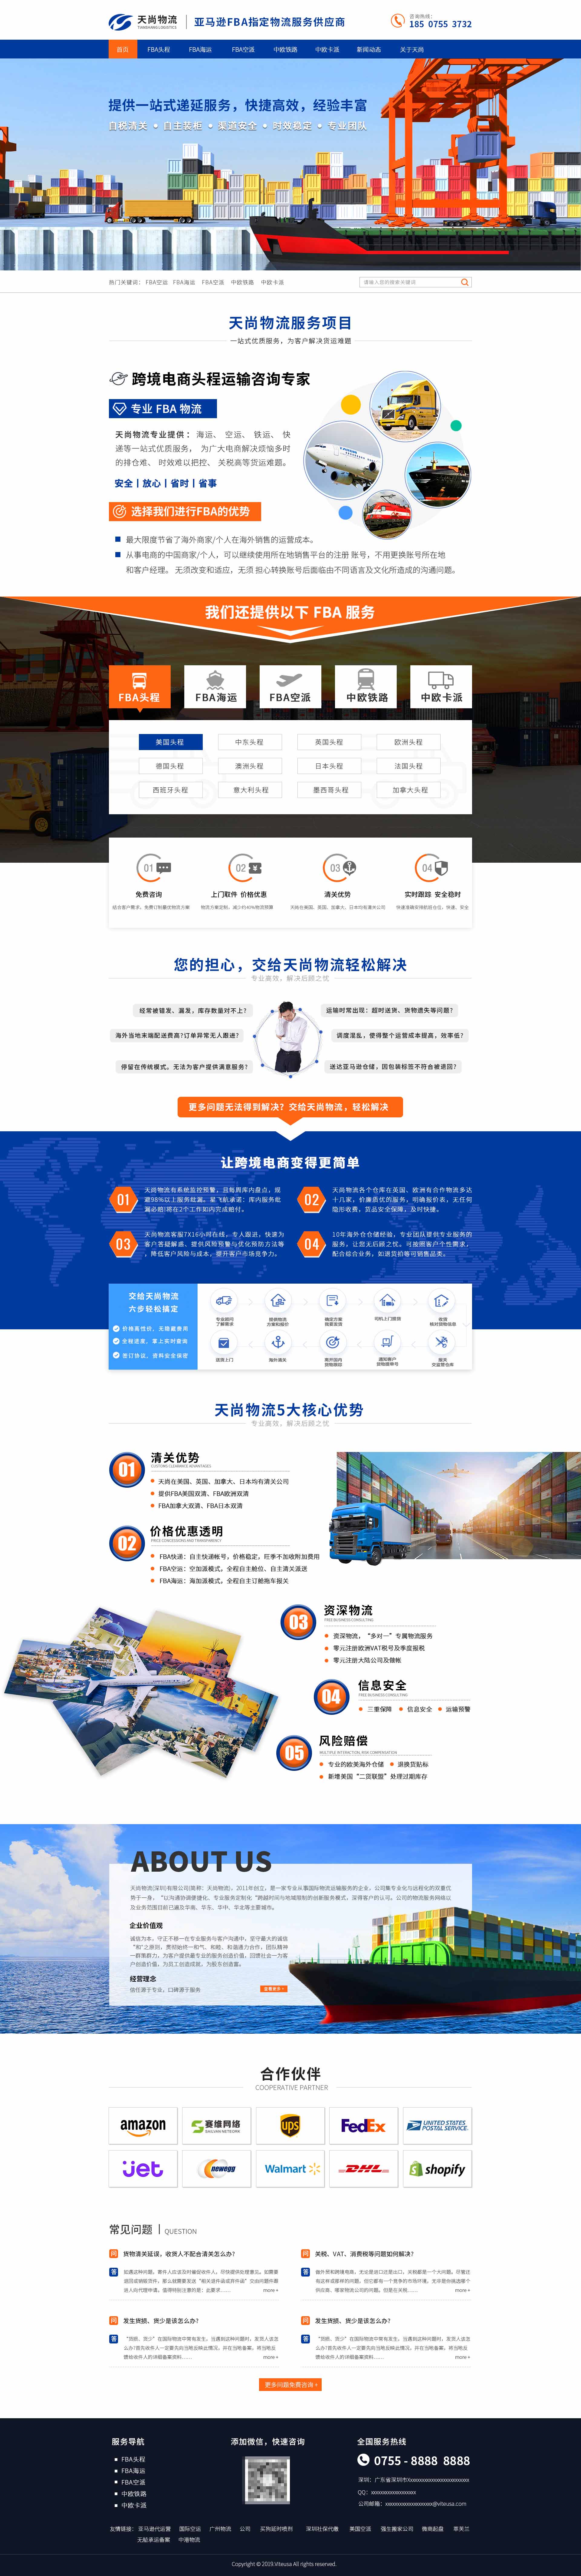 深圳网站建设案例之国际物流公司网站